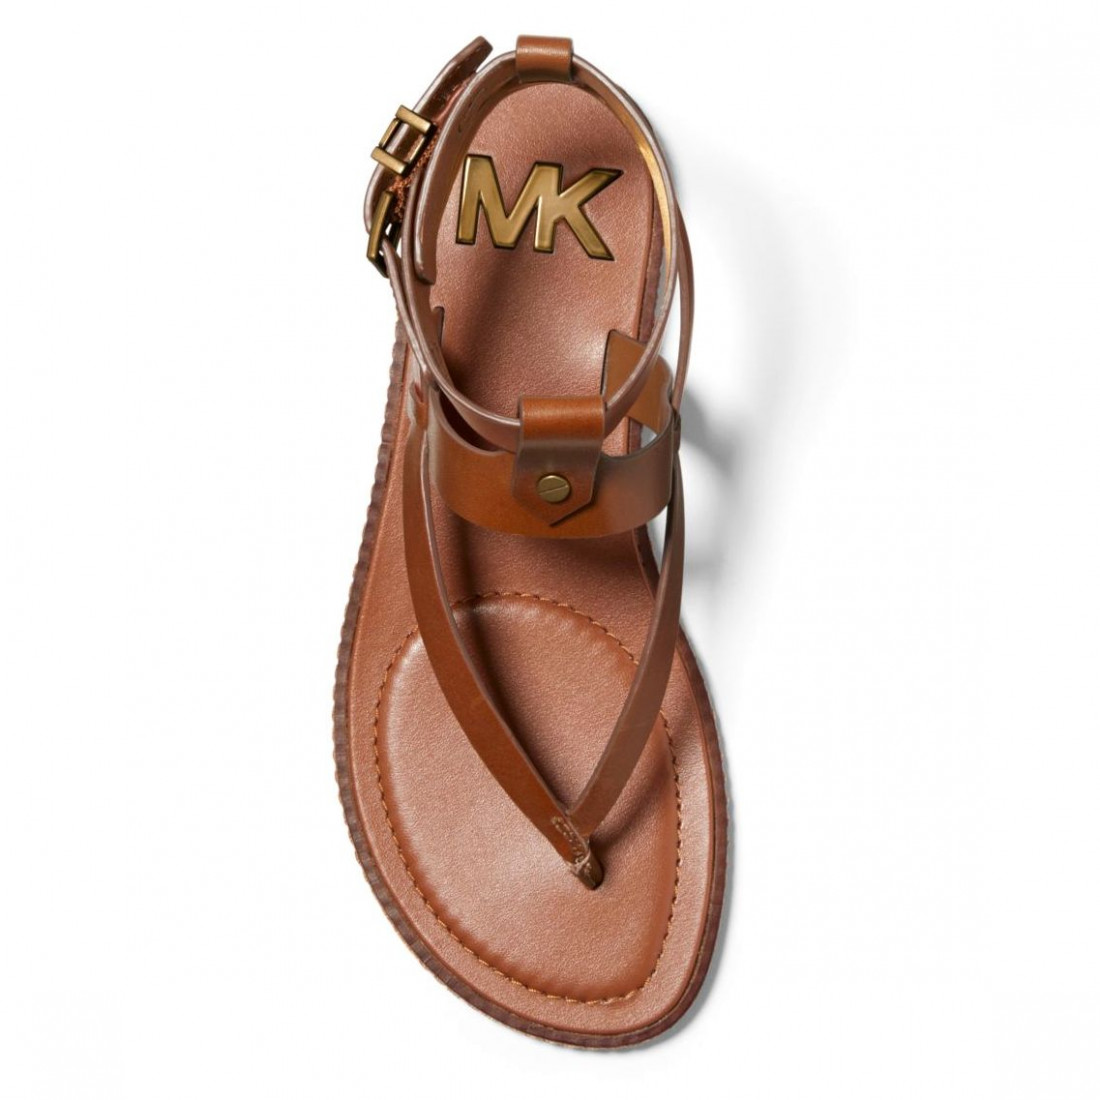 mk sandals canada